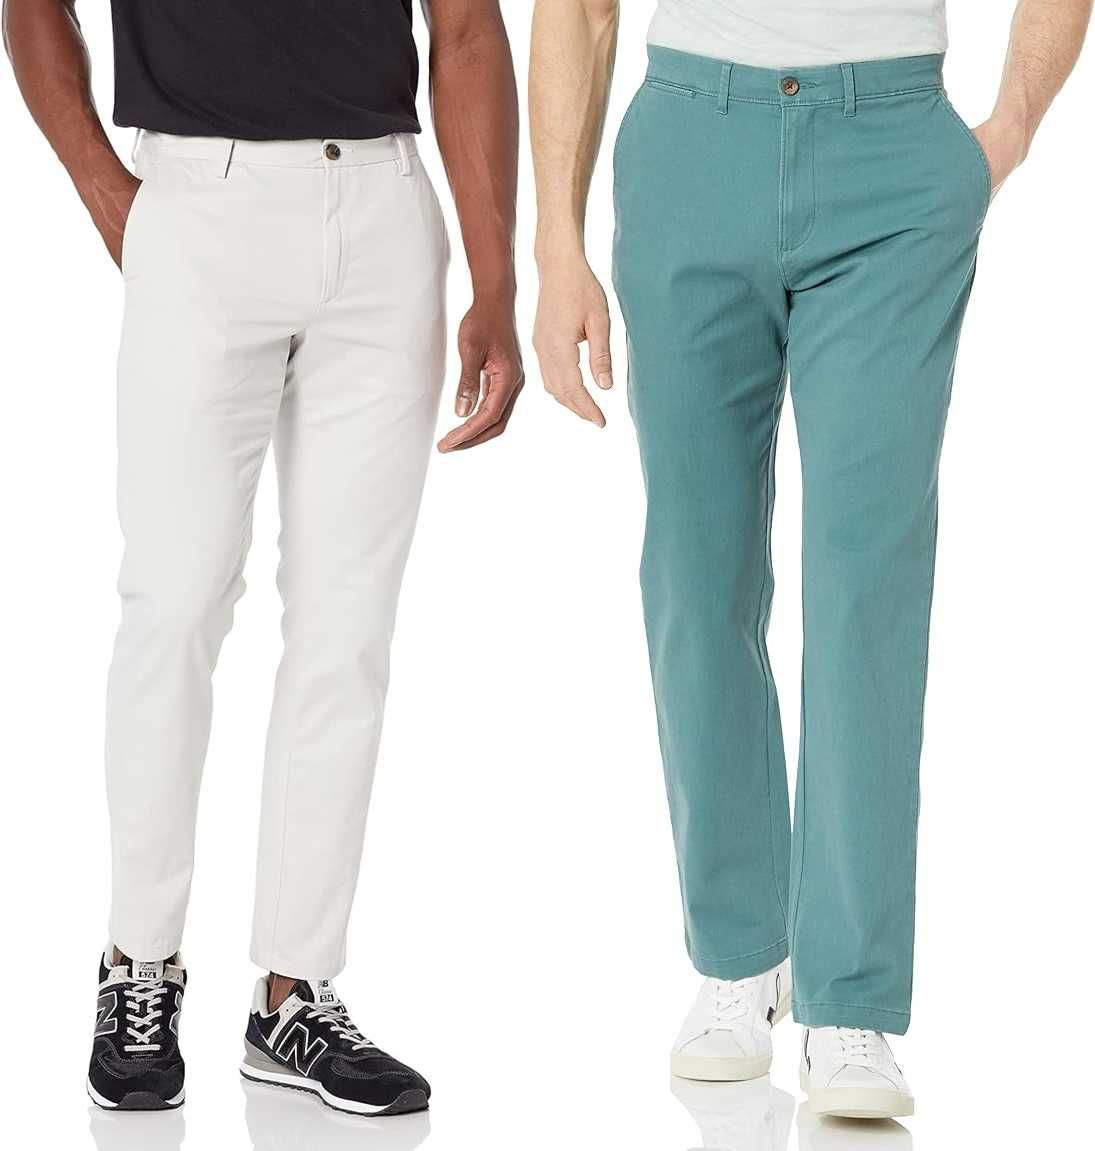 Летние мужские брюки (слаксы / чинос) из штатов. Новые, фирменные